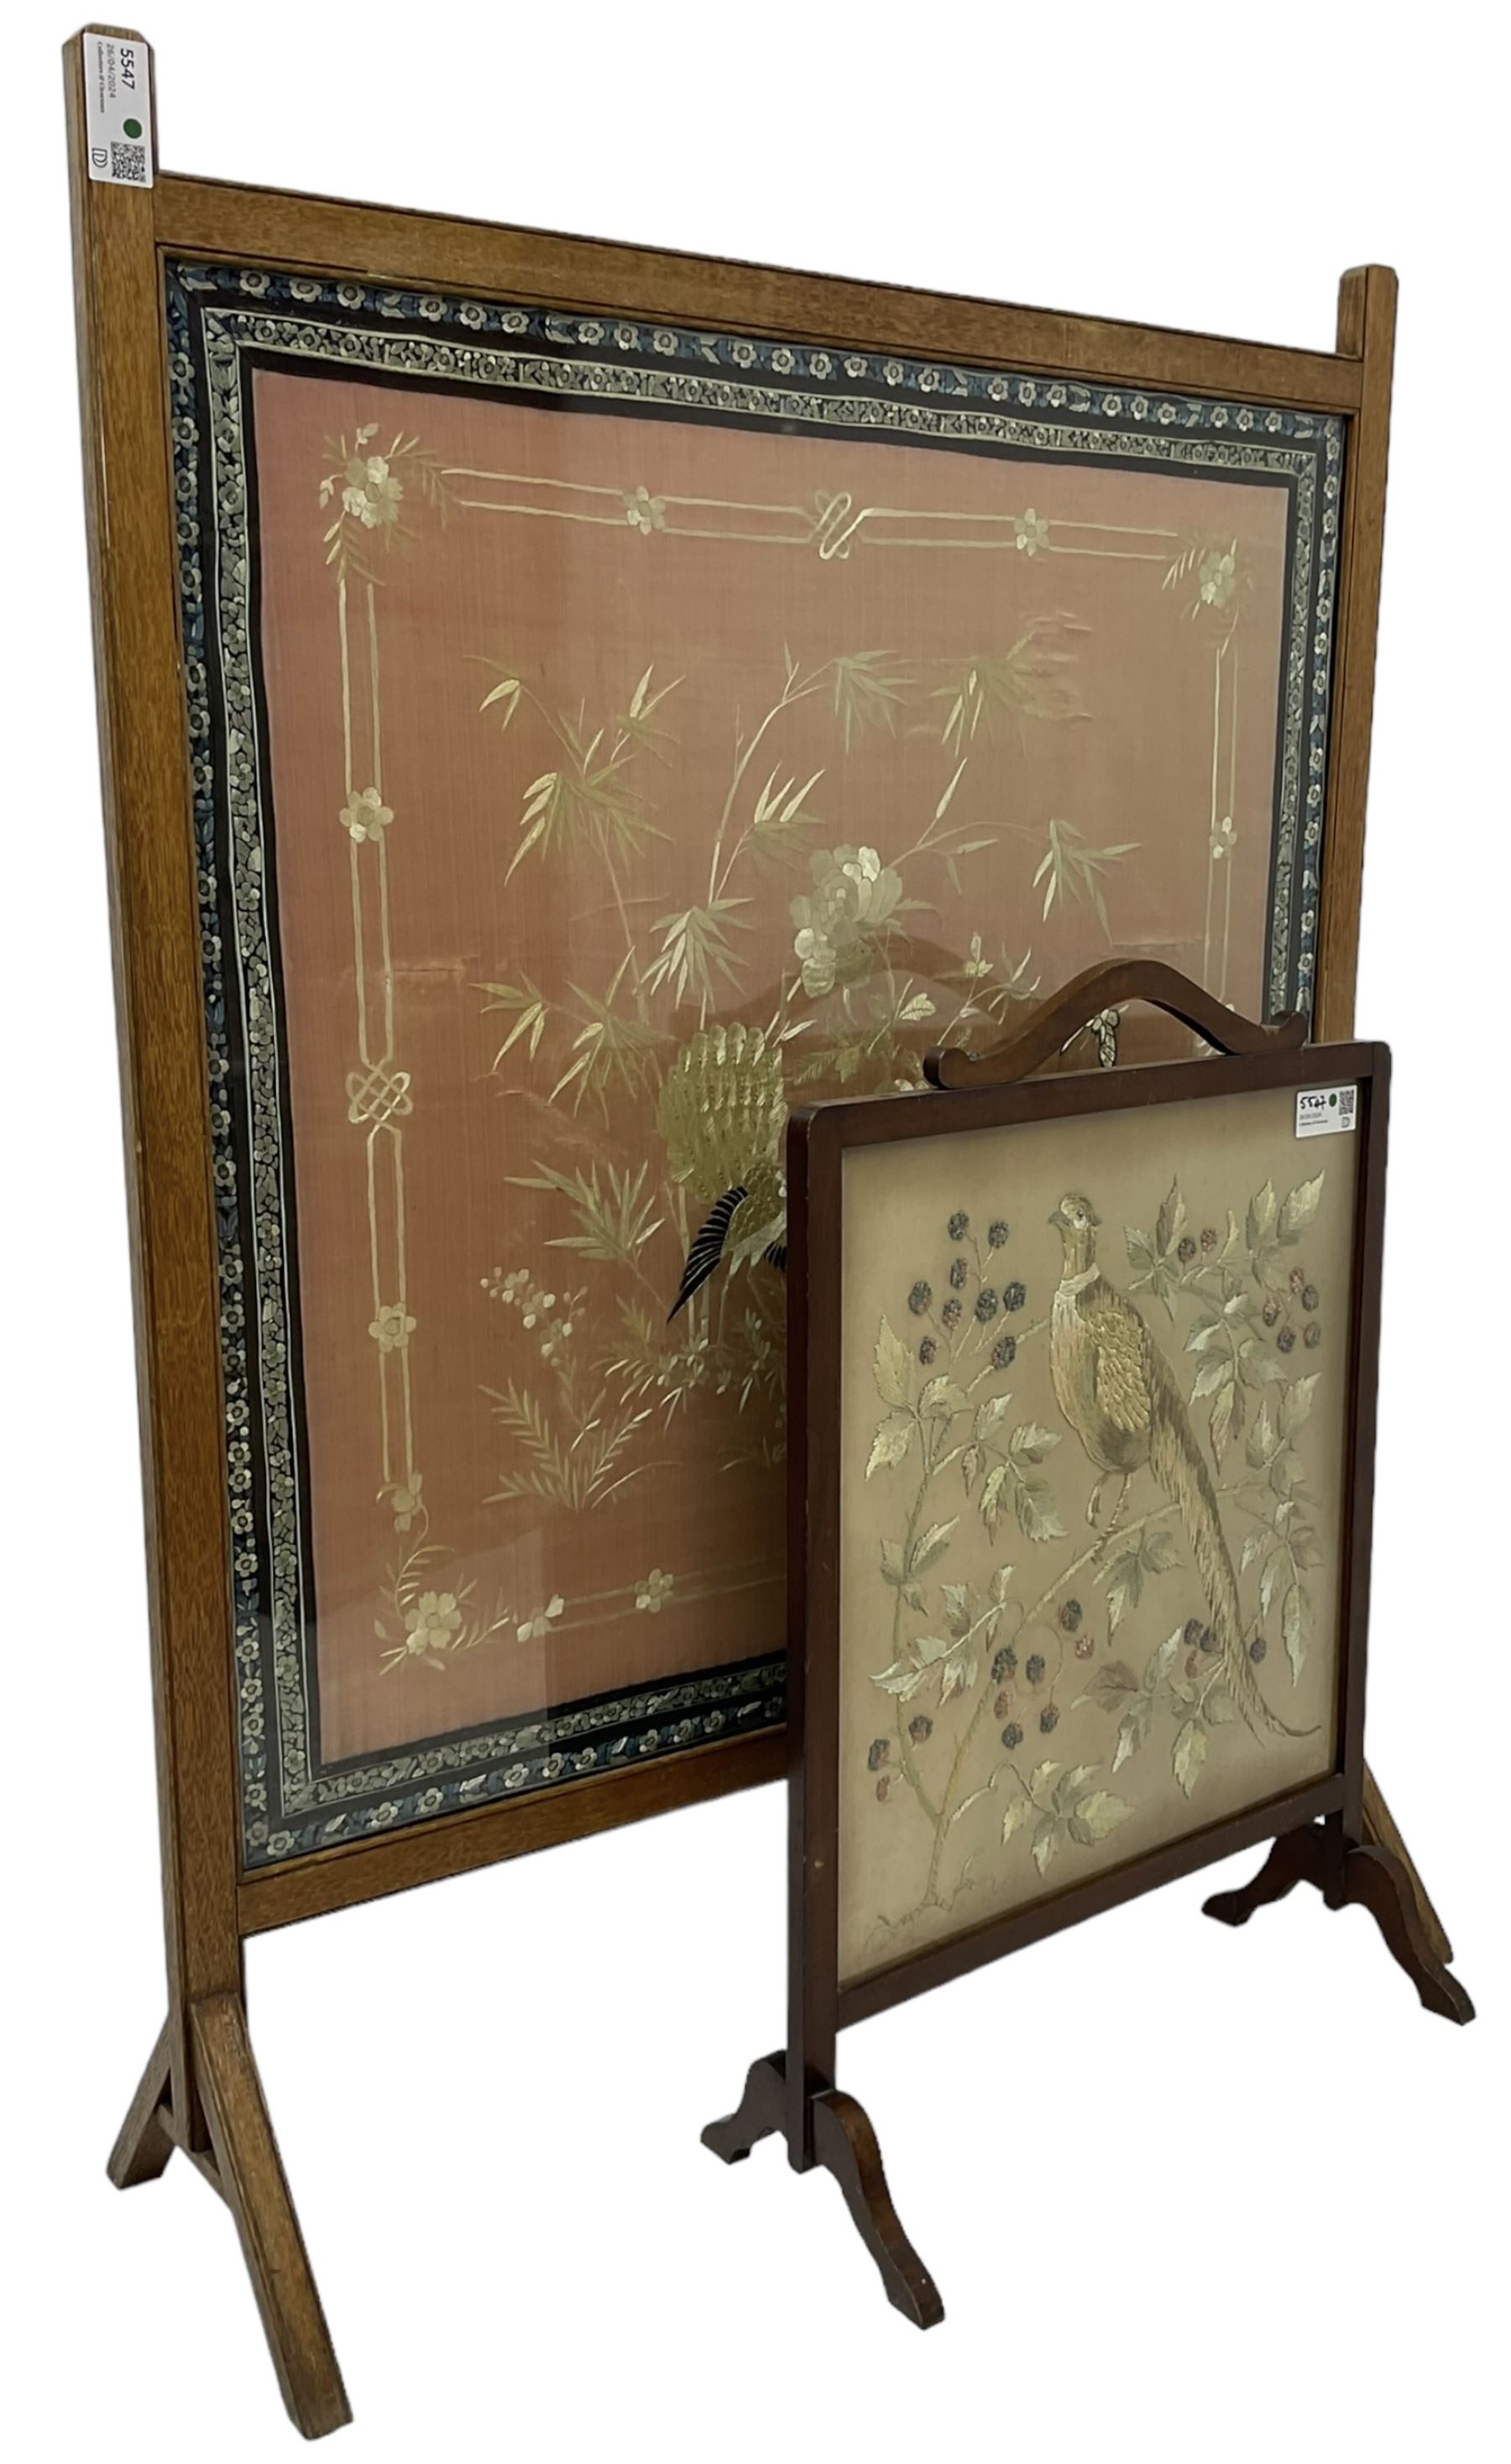 20th century oak framed fire screen